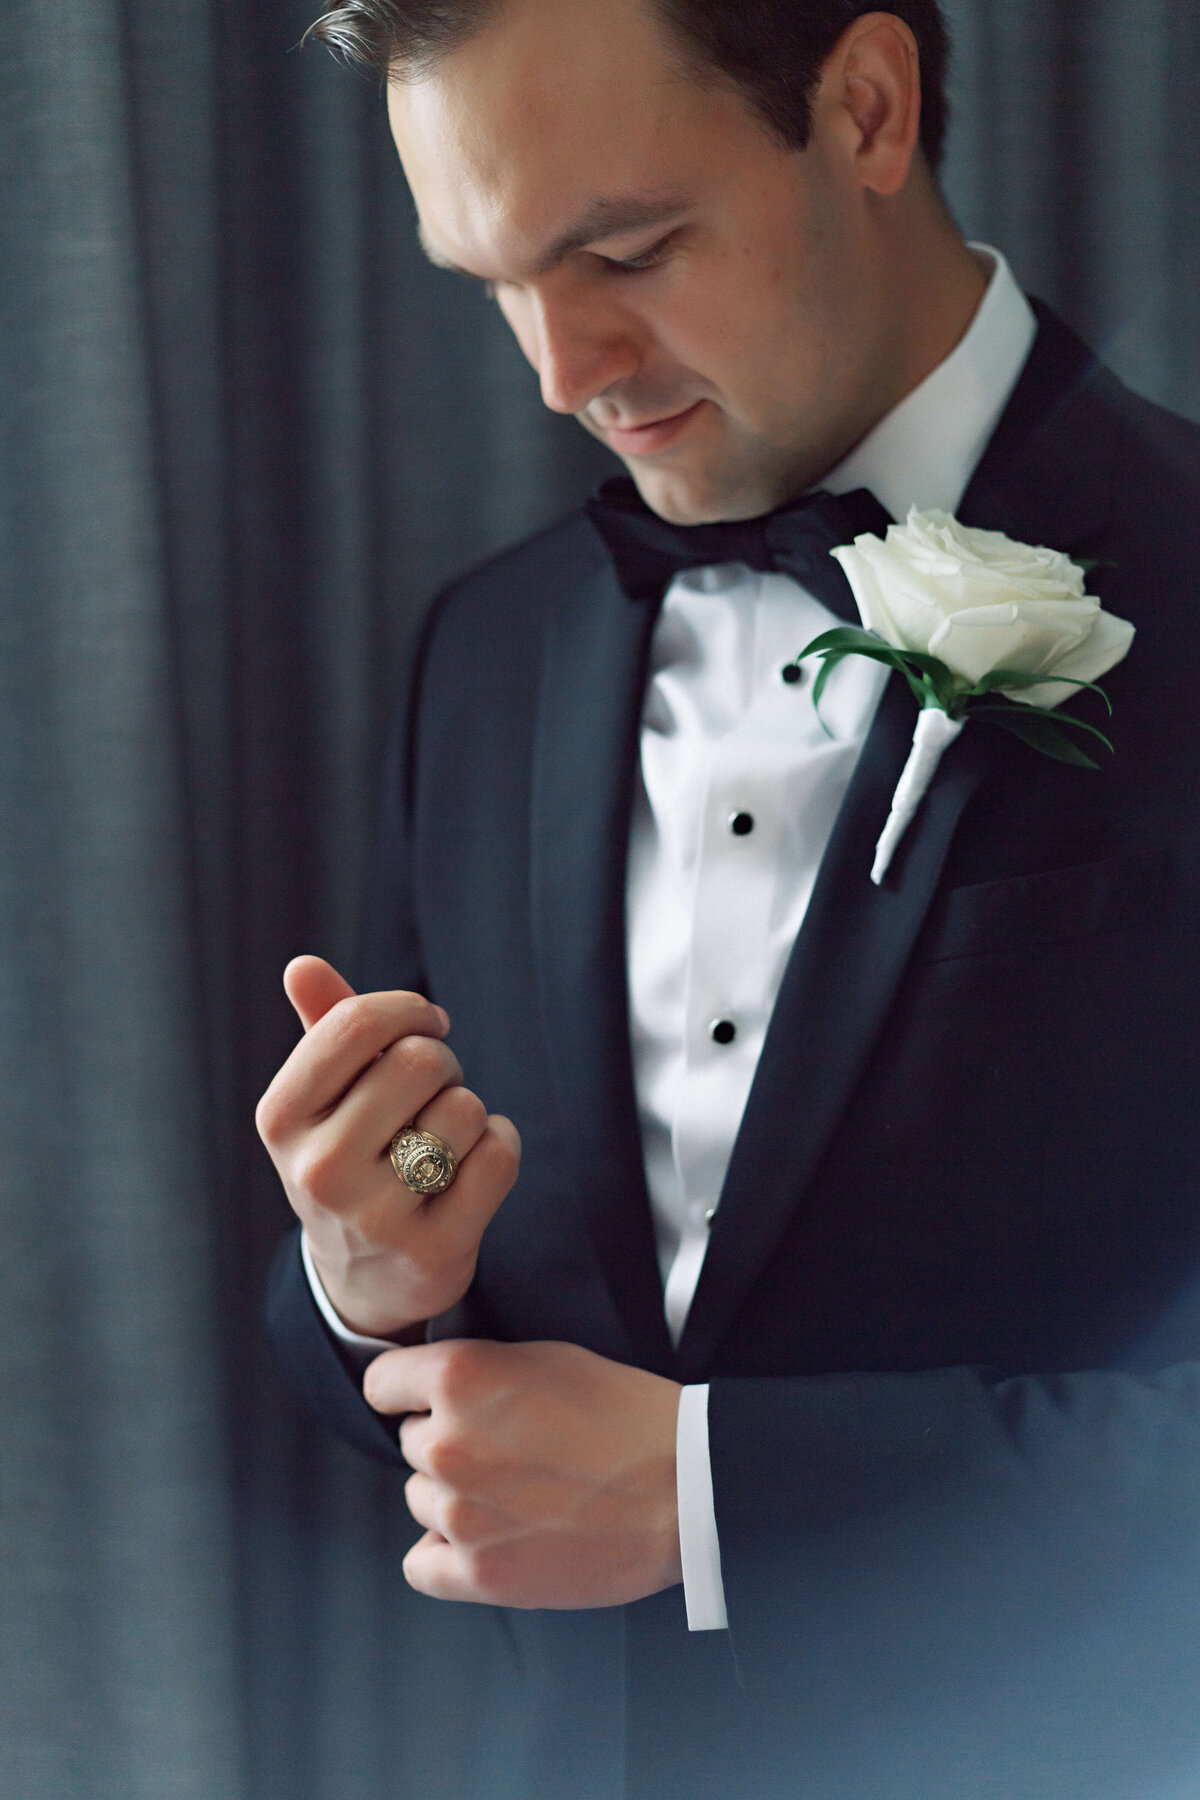 groom in classic black tux